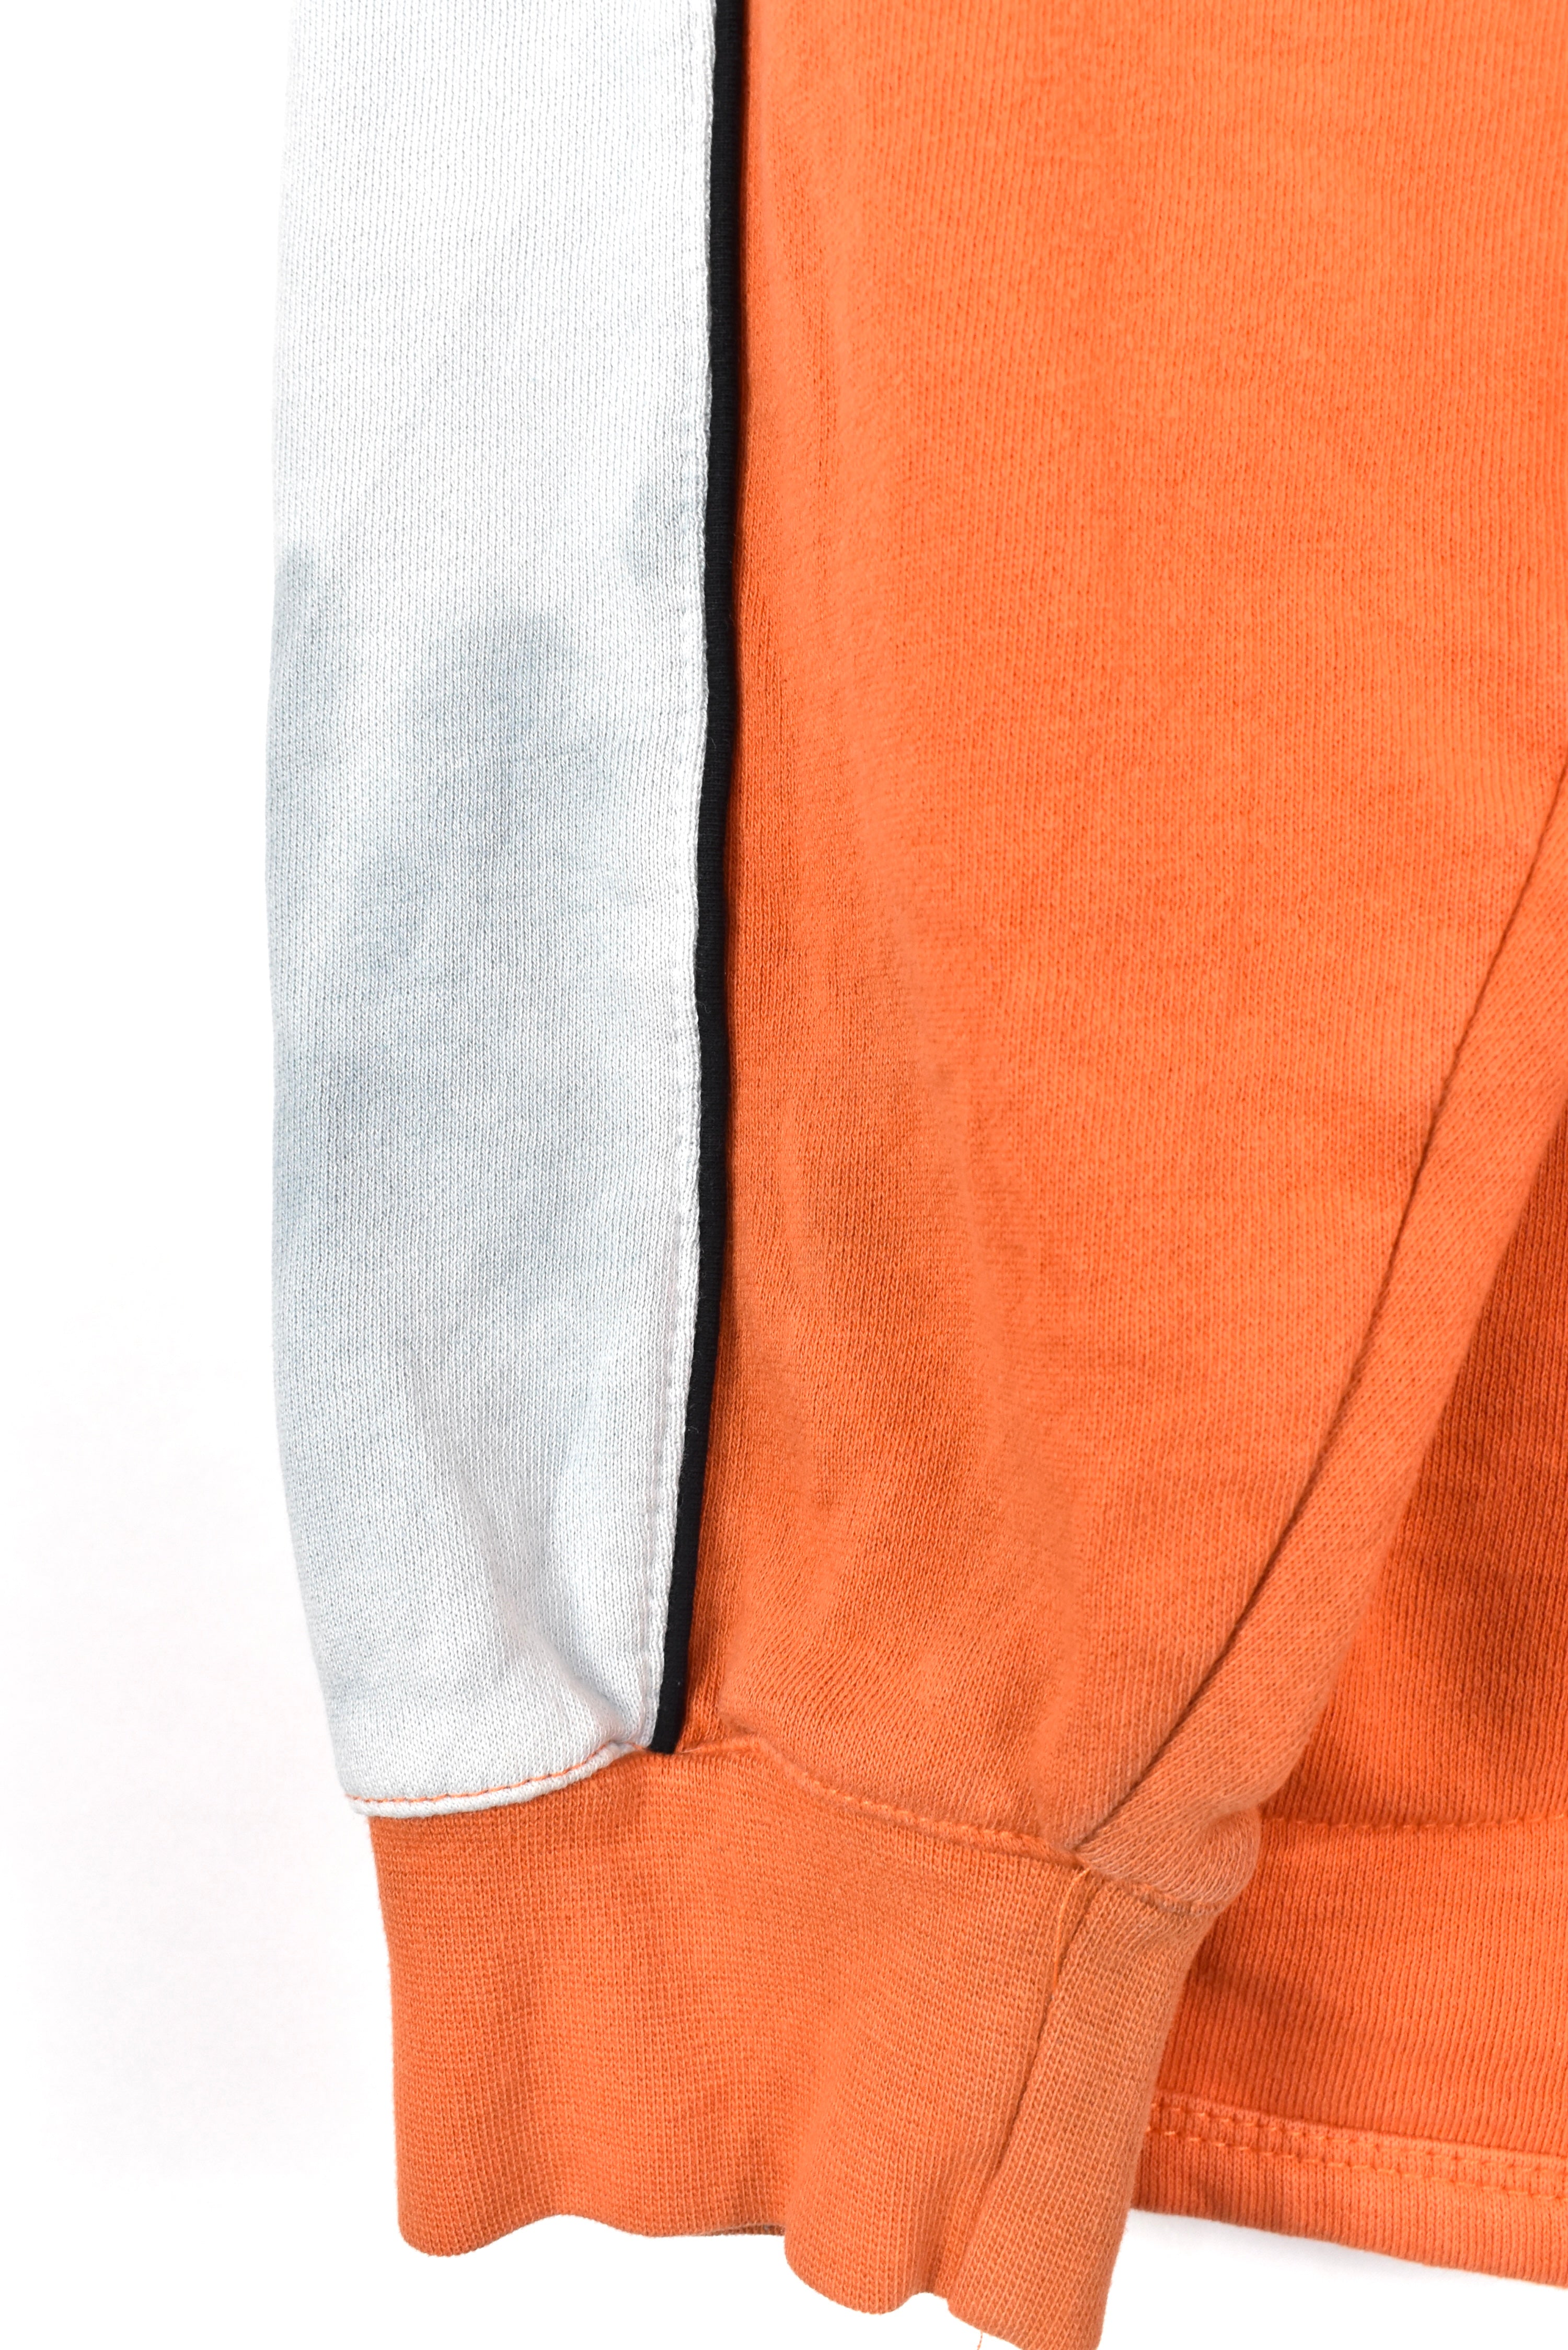 Vintage Philadelphia Flyers hoodie, NHL orange embroidered sweatshirt - AU M PRO SPORT